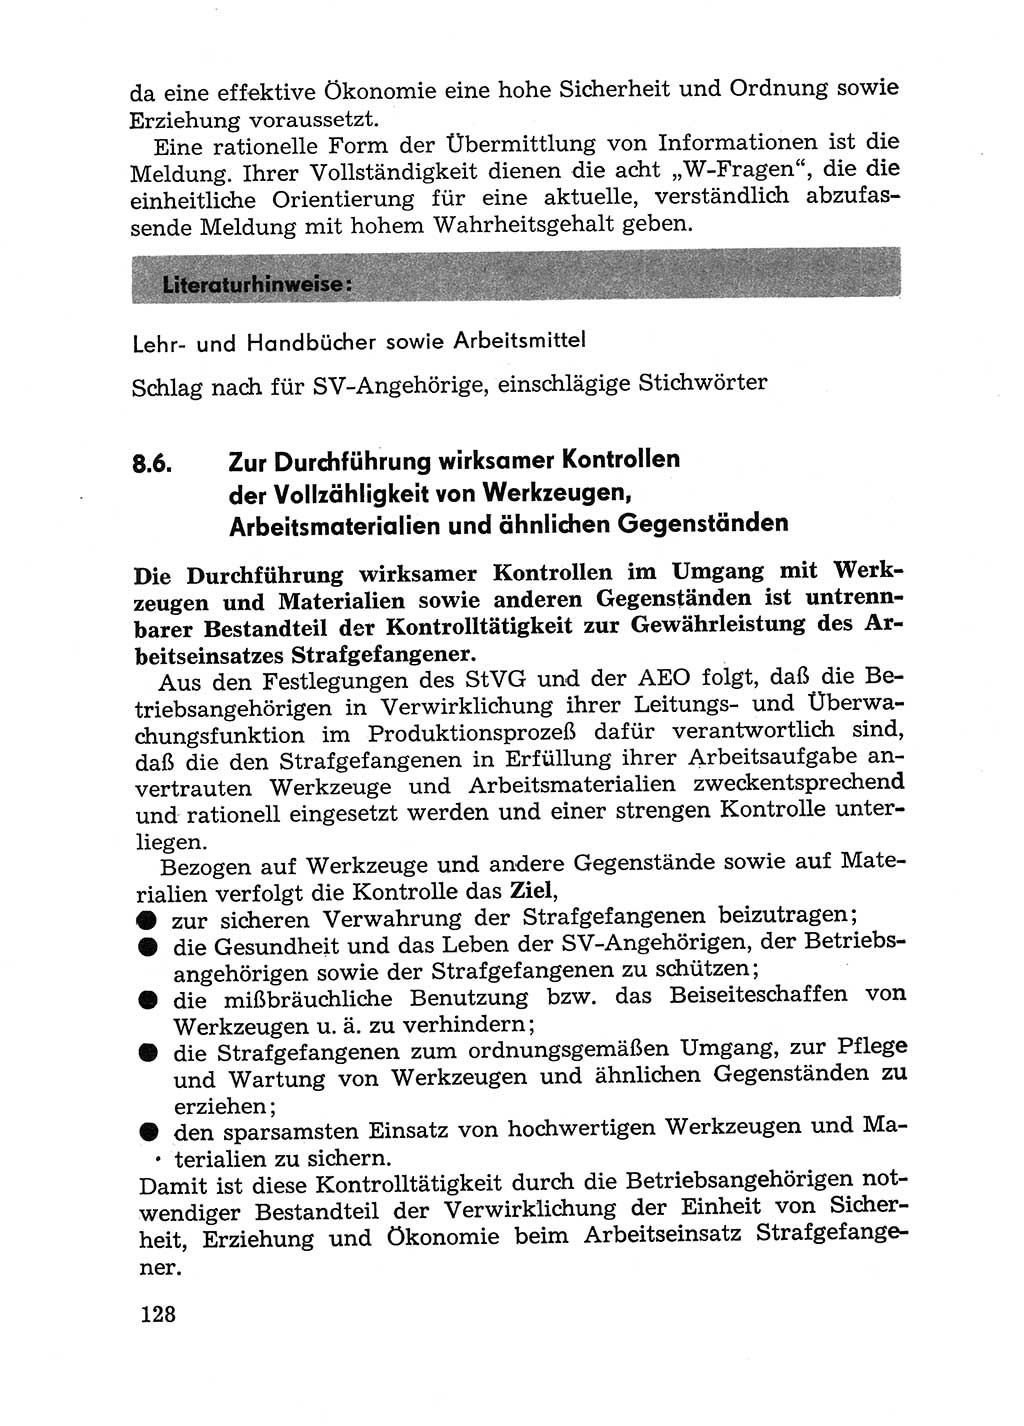 Handbuch für Betriebsangehörige, Abteilung Strafvollzug (SV) [Ministerium des Innern (MdI) Deutsche Demokratische Republik (DDR)] 1981, Seite 128 (Hb. BA Abt. SV MdI DDR 1981, S. 128)